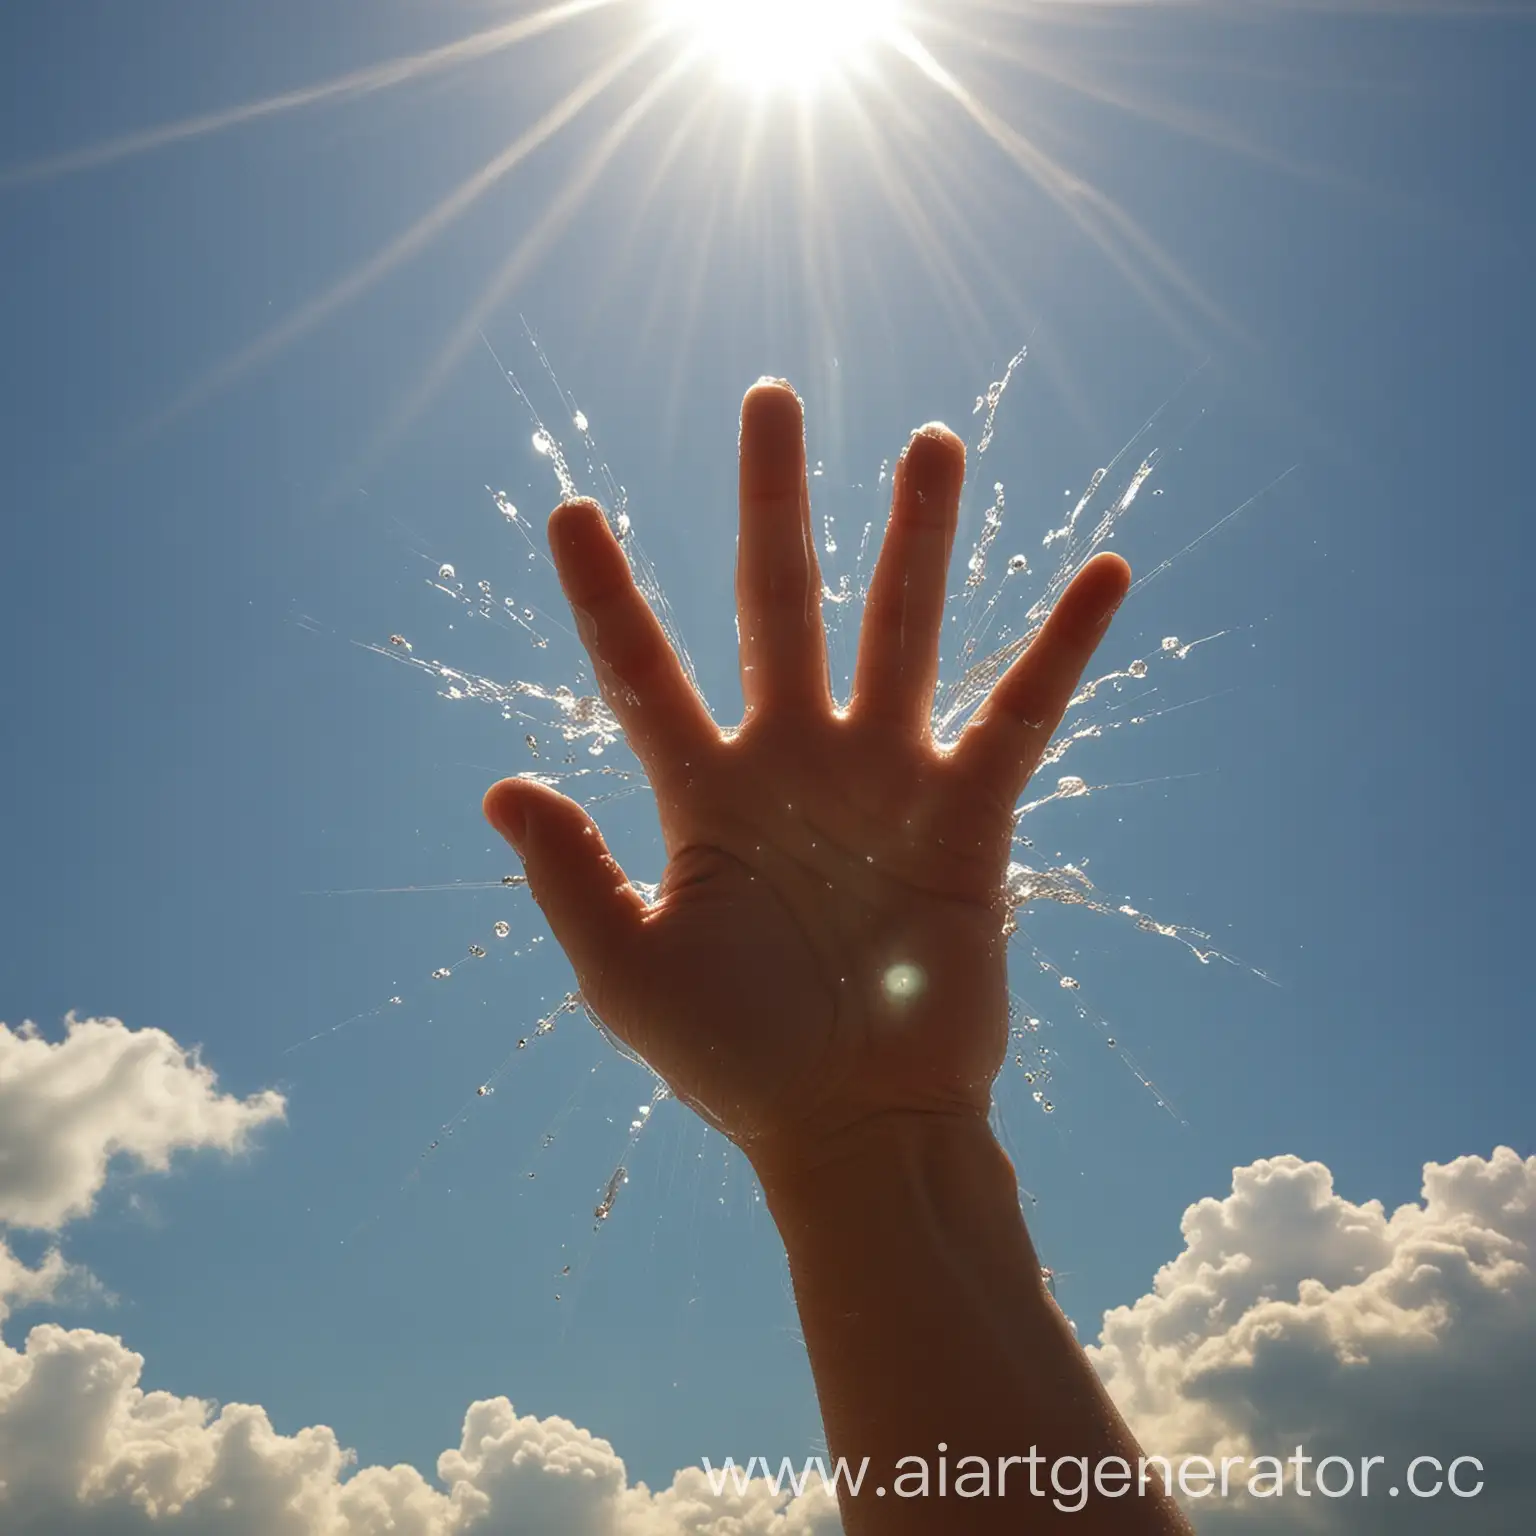 свободная пластика руки облака вода пух солнце лучи игра лёгкость